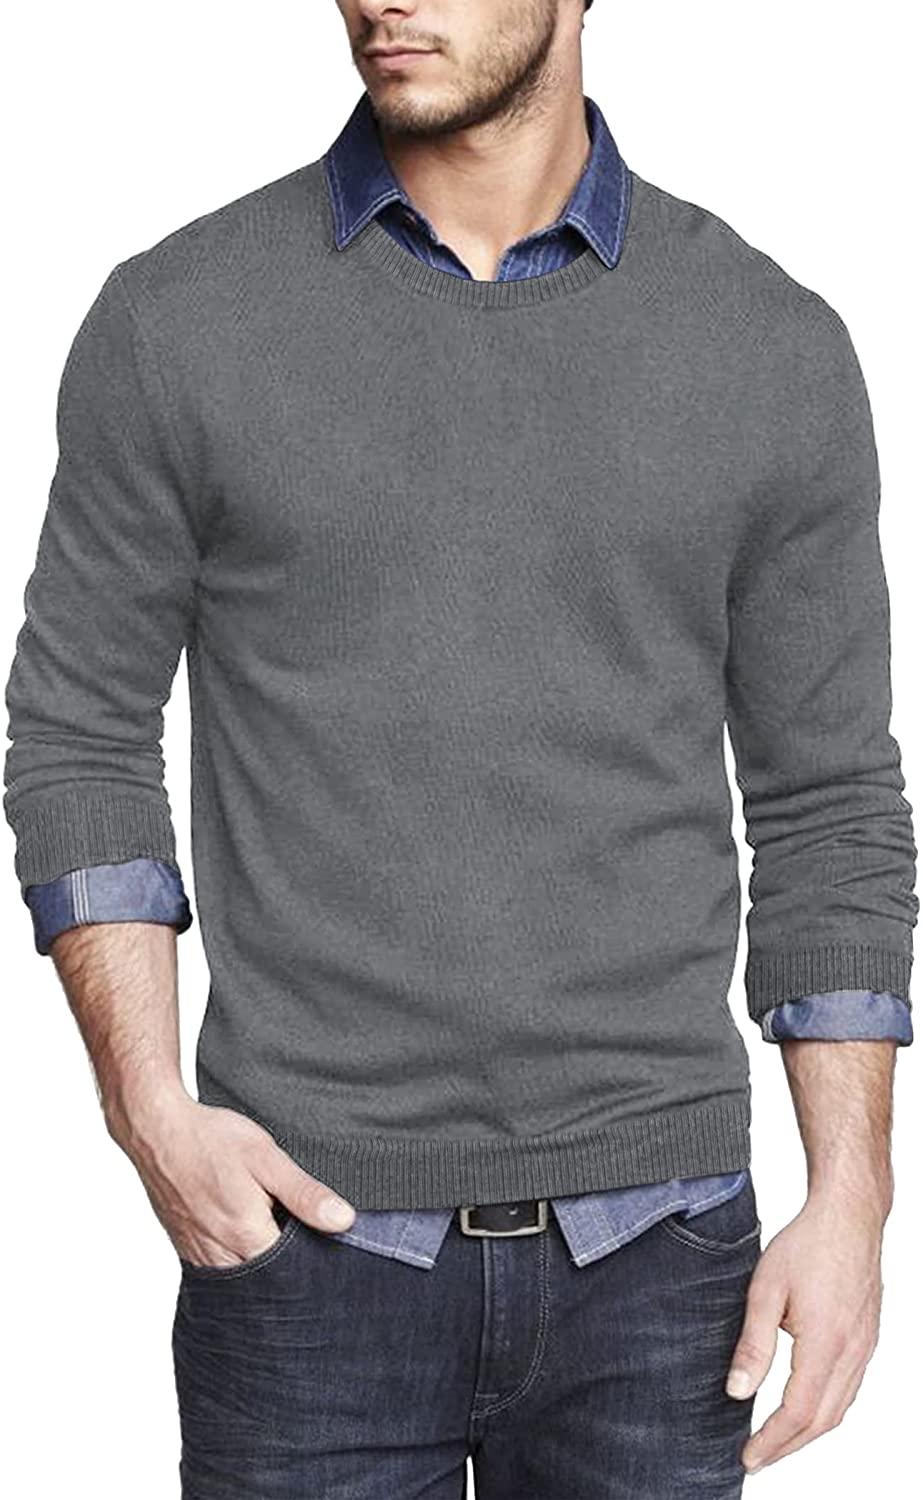 COOFANDY Men's Crew Neck Sweater Slim Fit Lightweight Sweatshirts